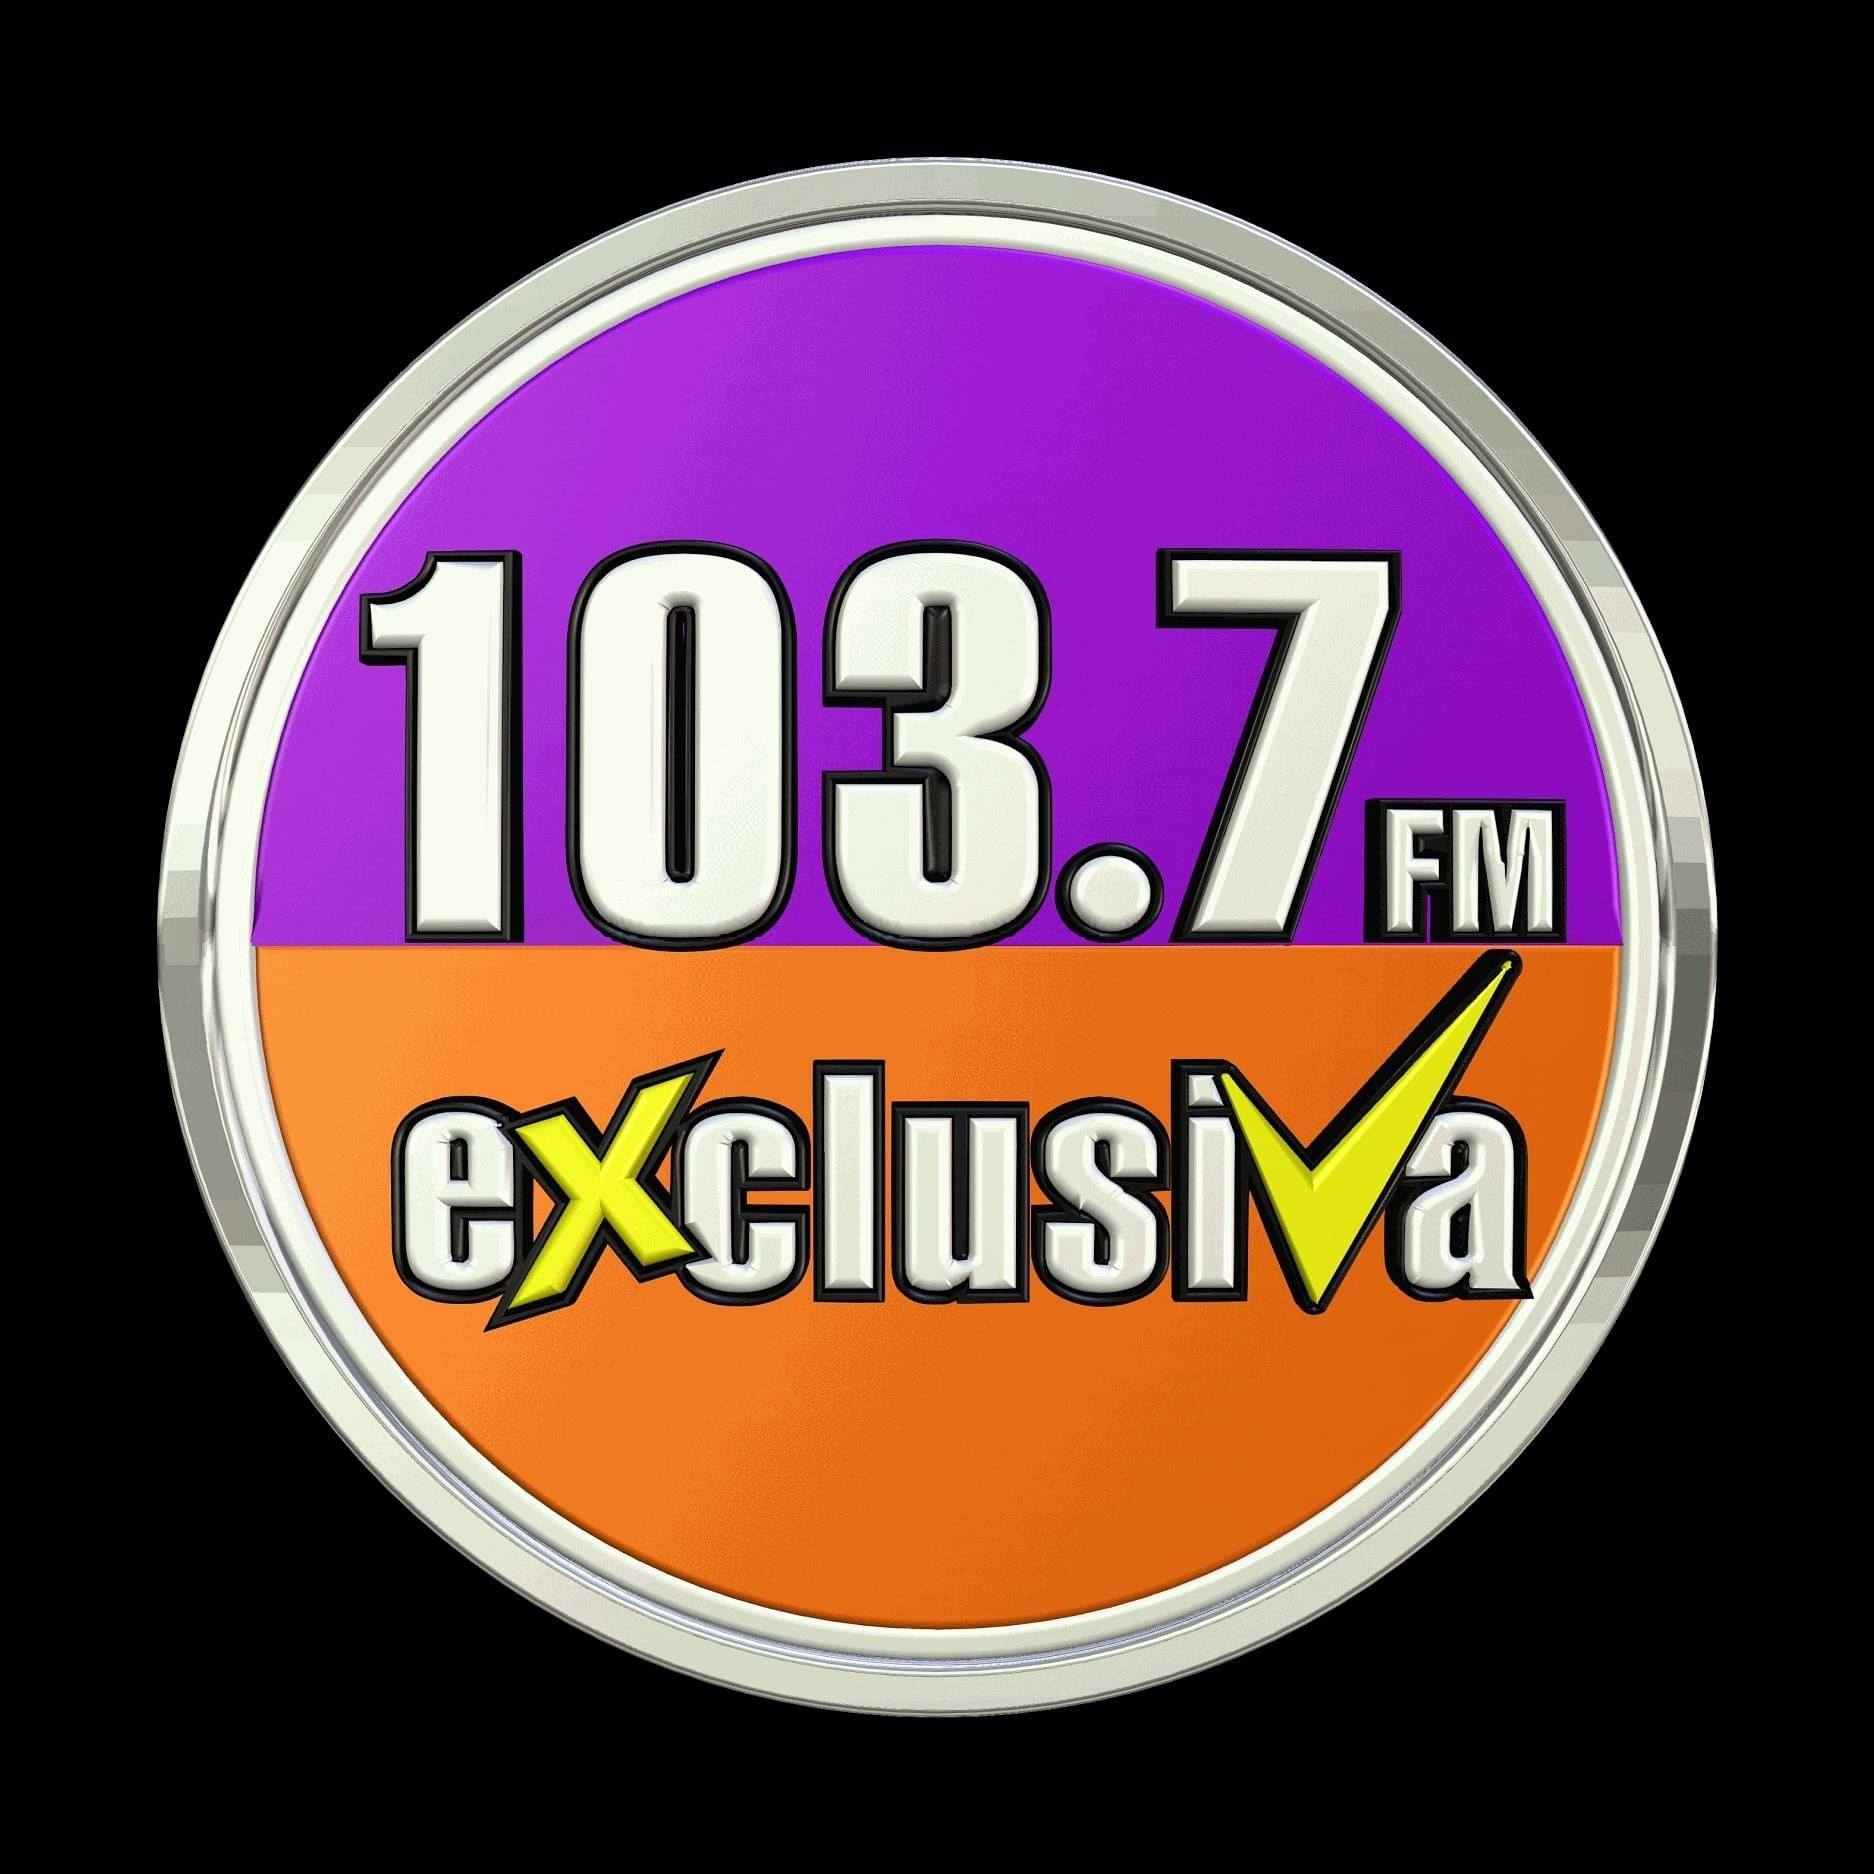 Exclusiva FM 103.7